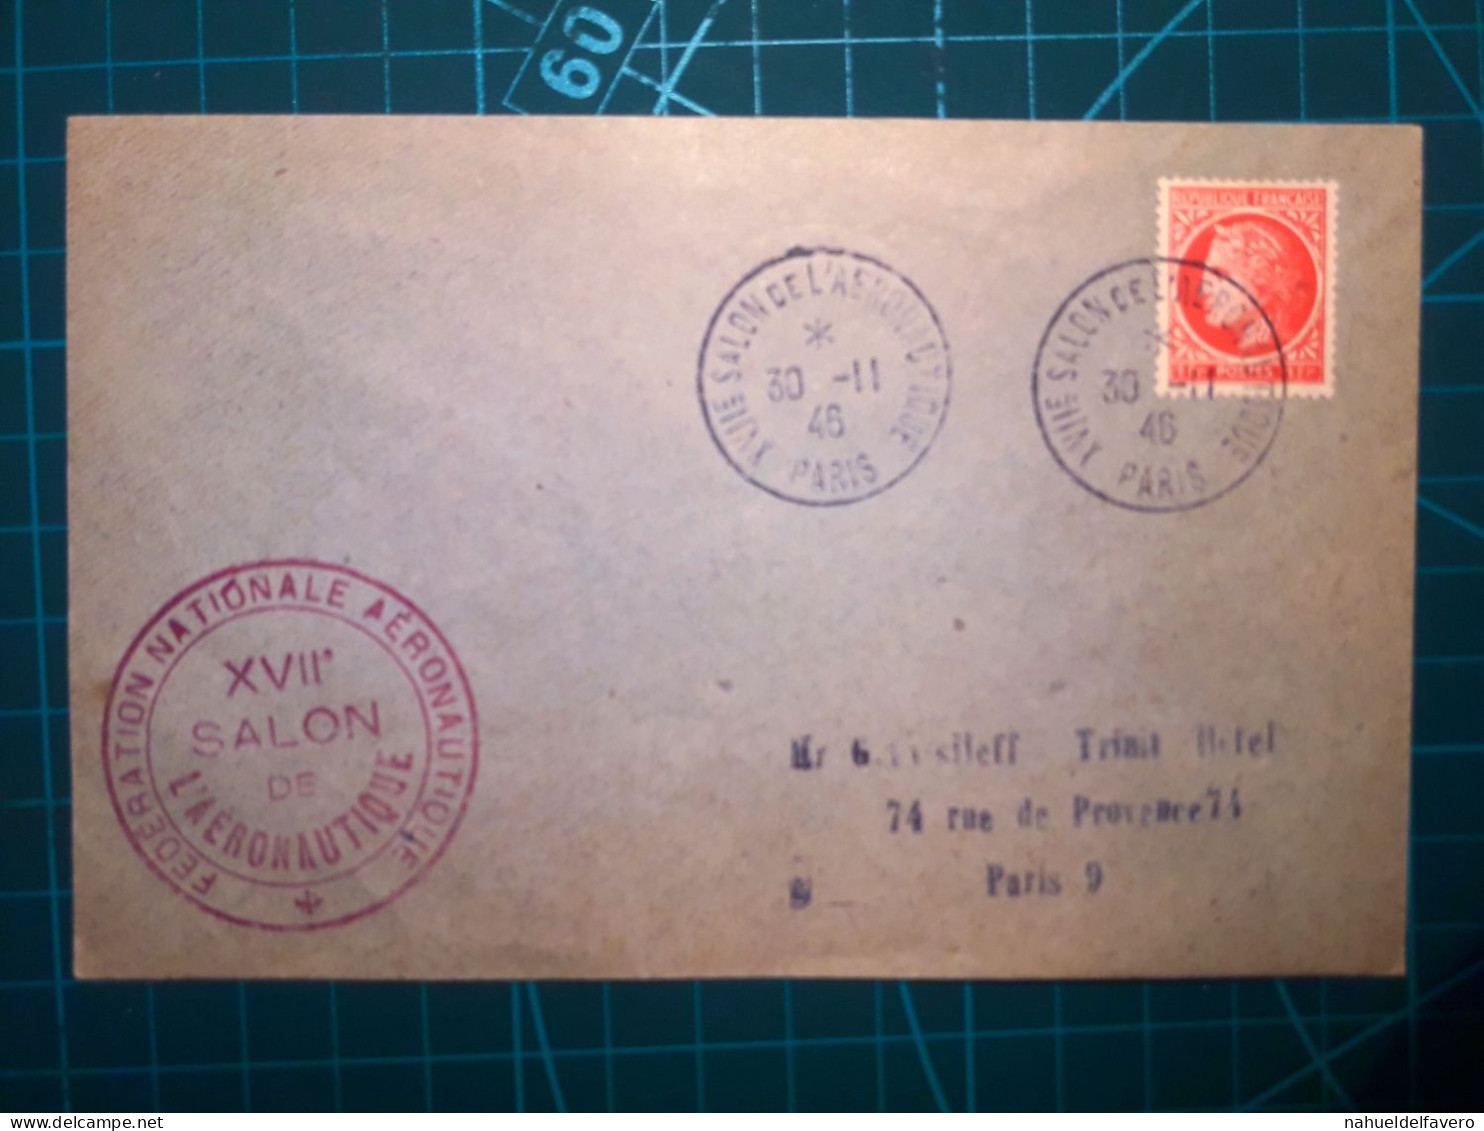 FRANCE, Enveloppe Circulée à Paris Avec Cachet Spécial Du "XVIIe Salon De L'Aéronautique" De L'année 1946. - Used Stamps